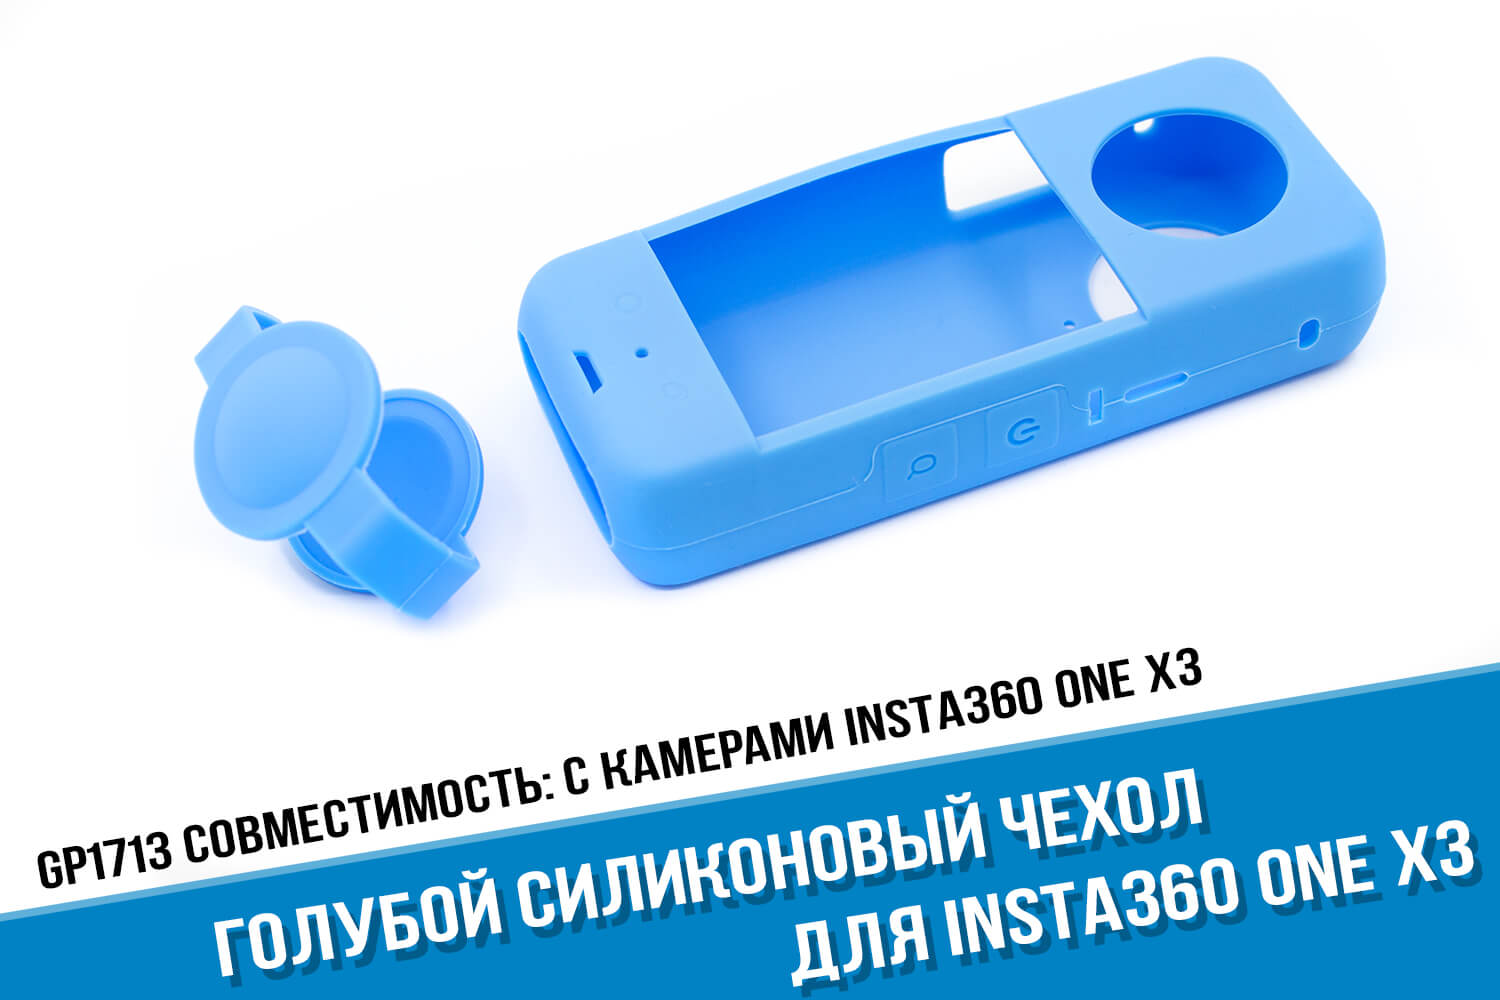 Голубой силиконовый чехол камеры Insta360 One X3